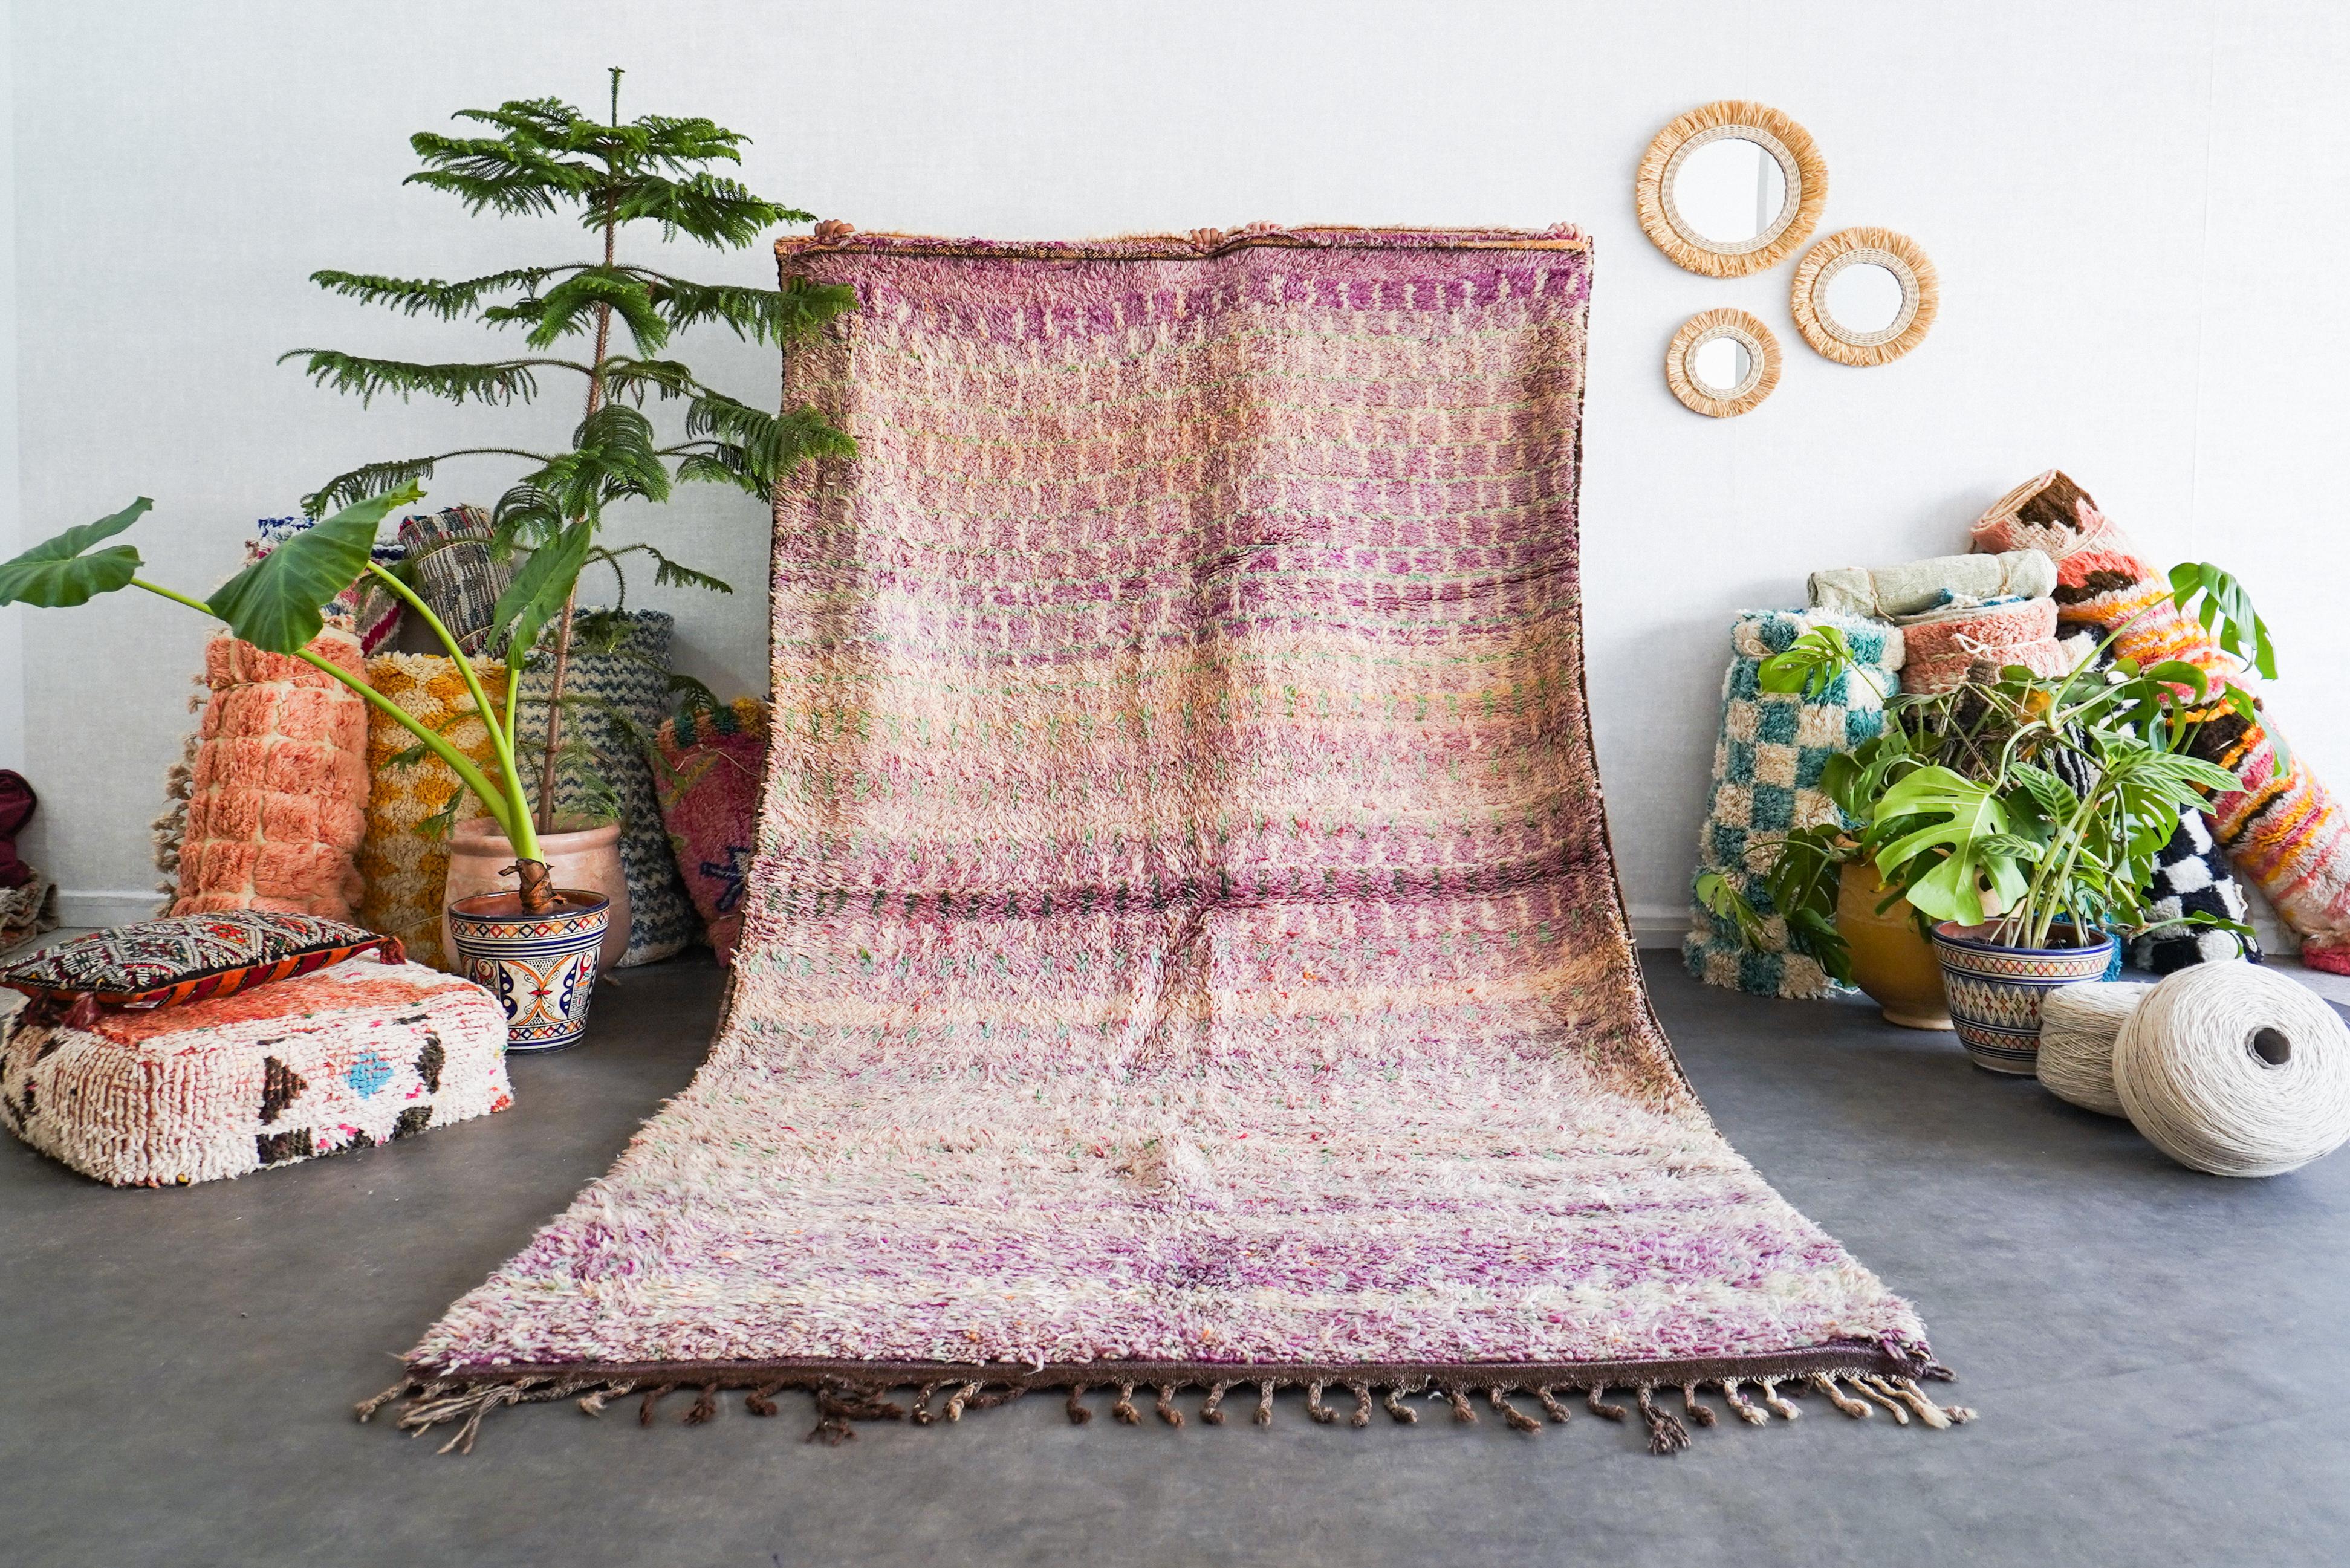 Entdecken Sie das reiche Erbe, das in unseren marokkanischen Vintage-Teppich Purple eingewoben ist. Jeder Berberteppich wird von erfahrenen Kunsthandwerkern mit bewährten Techniken handgefertigt und ist ein einzigartiges Zeugnis der marokkanischen